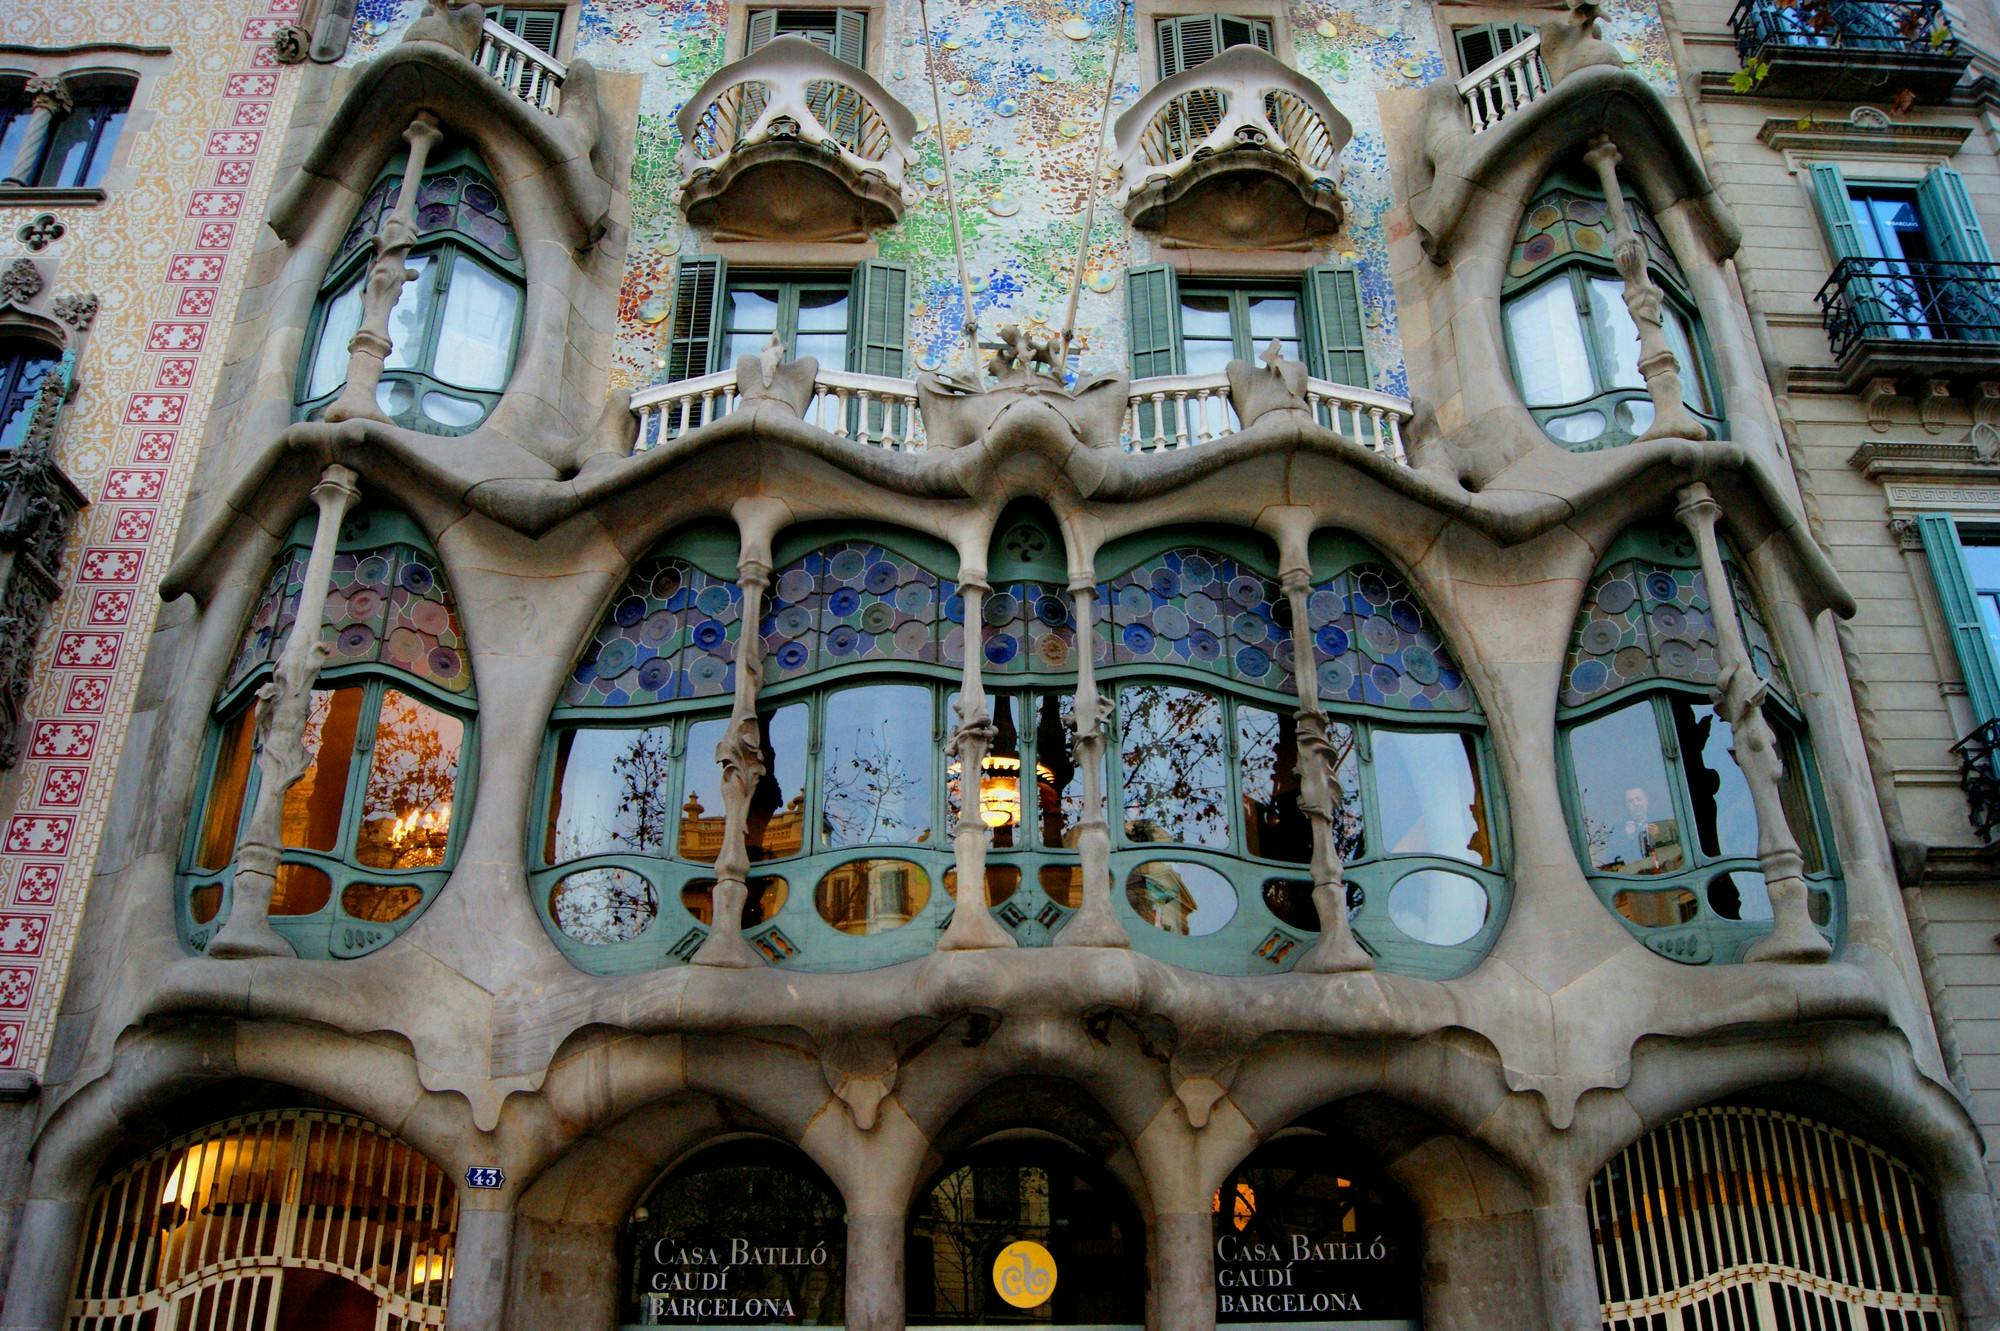 Casa Batllo Building in Barcelona